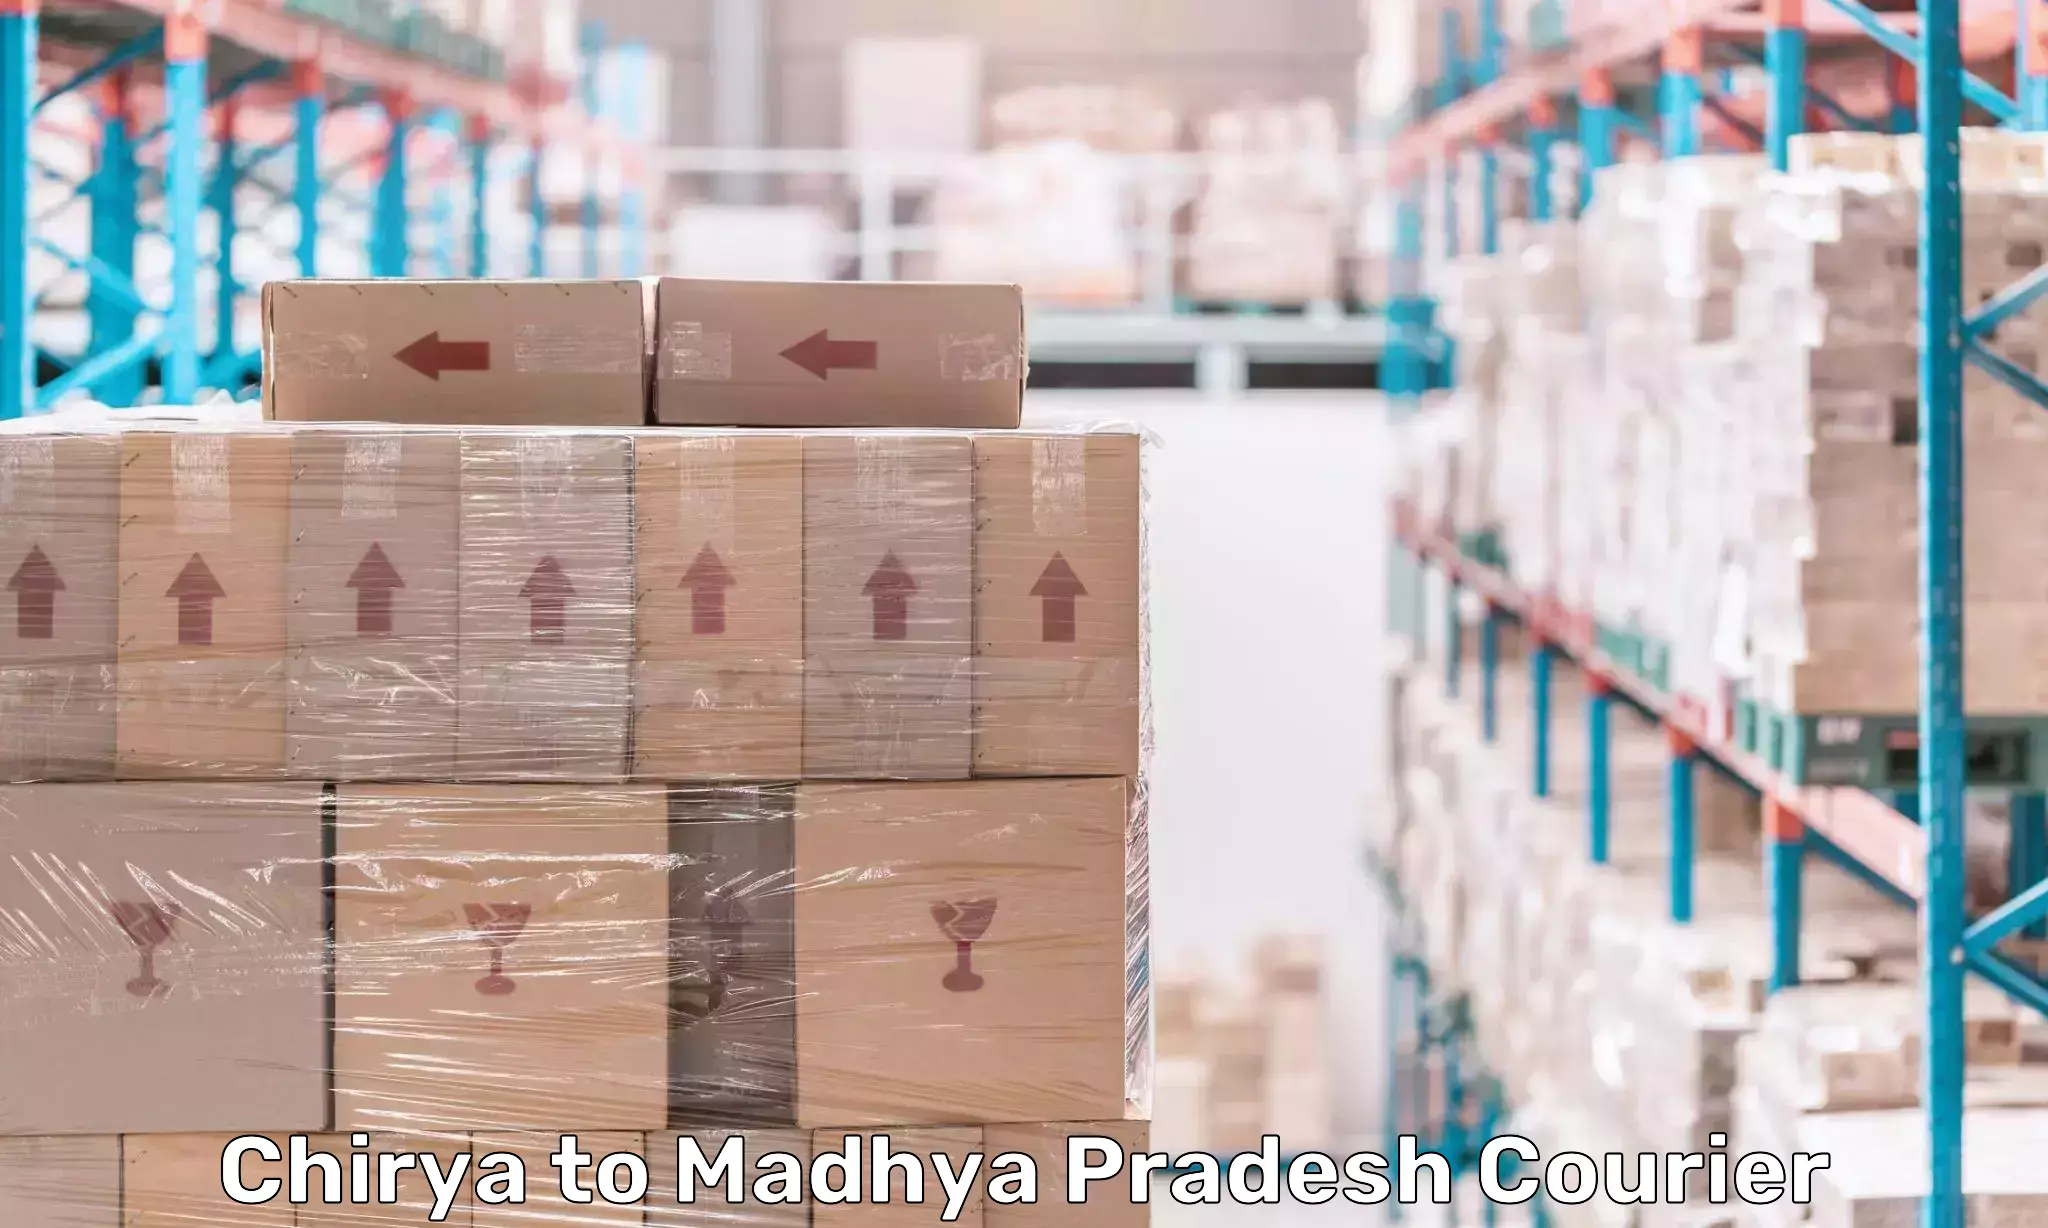 International courier networks Chirya to Madhya Pradesh